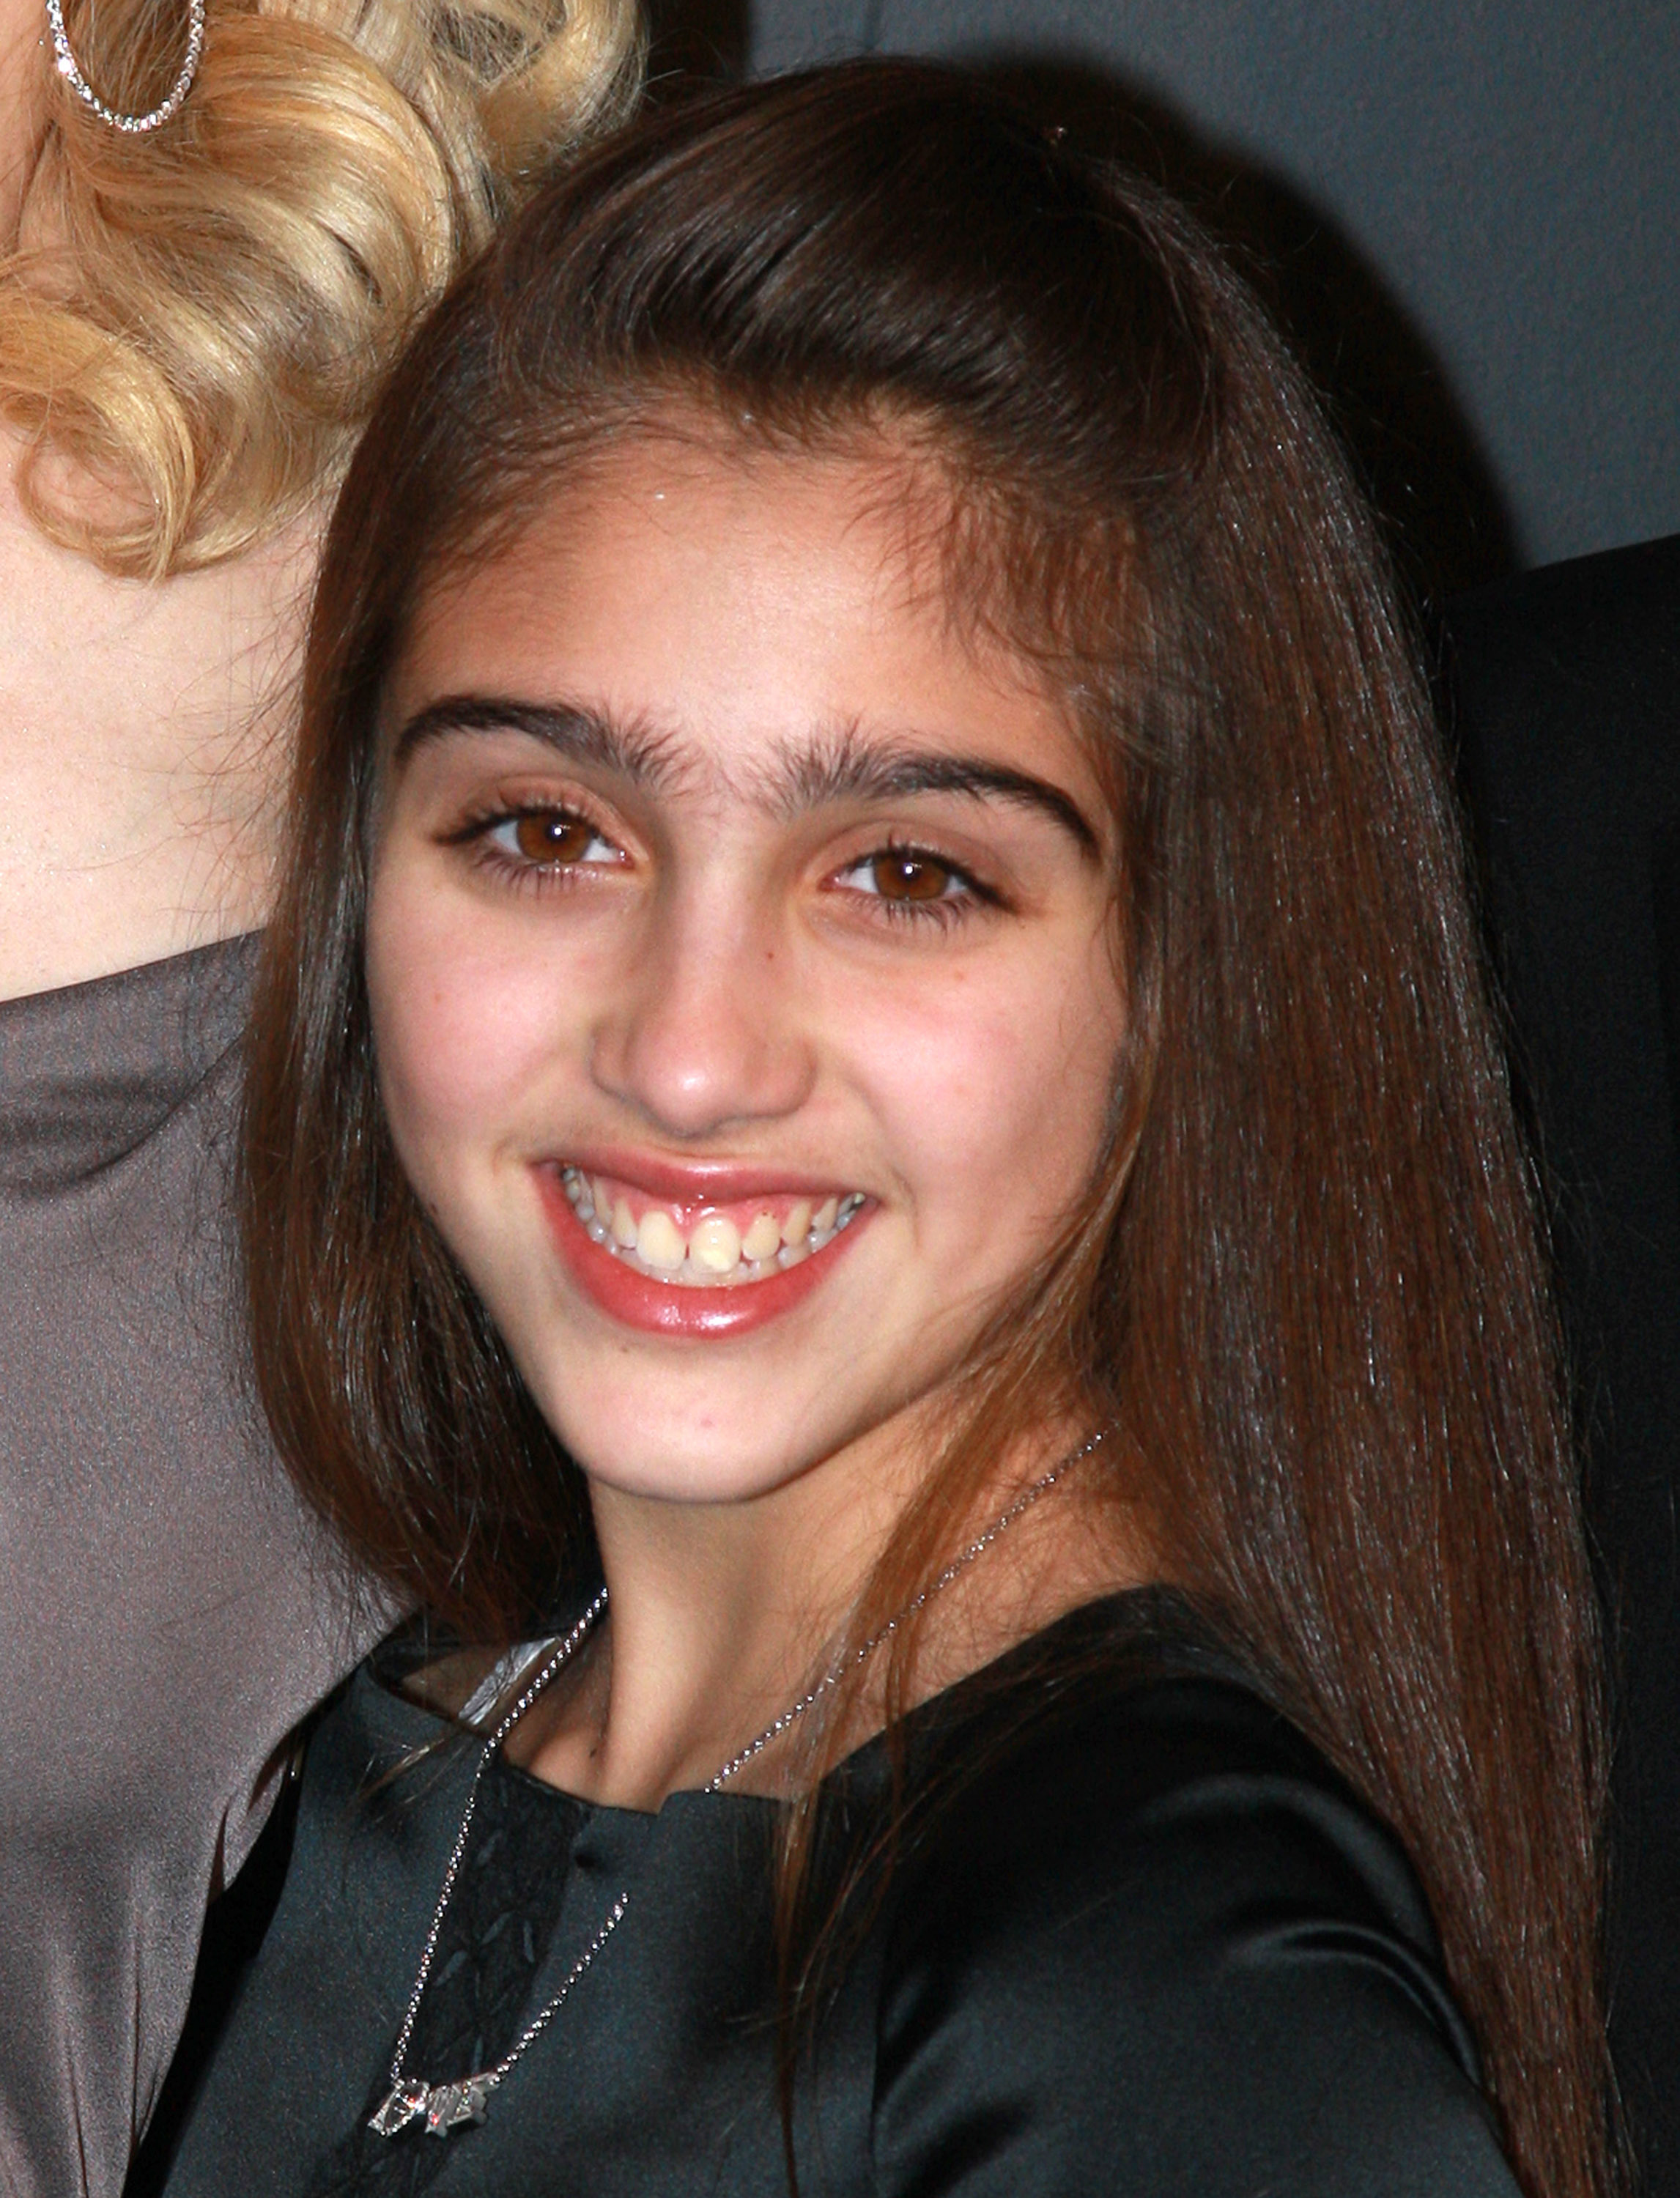 Lourdes "Lola" Leon, la fille de Madonna, le 6 février 2008 à New York | Source : Getty Images